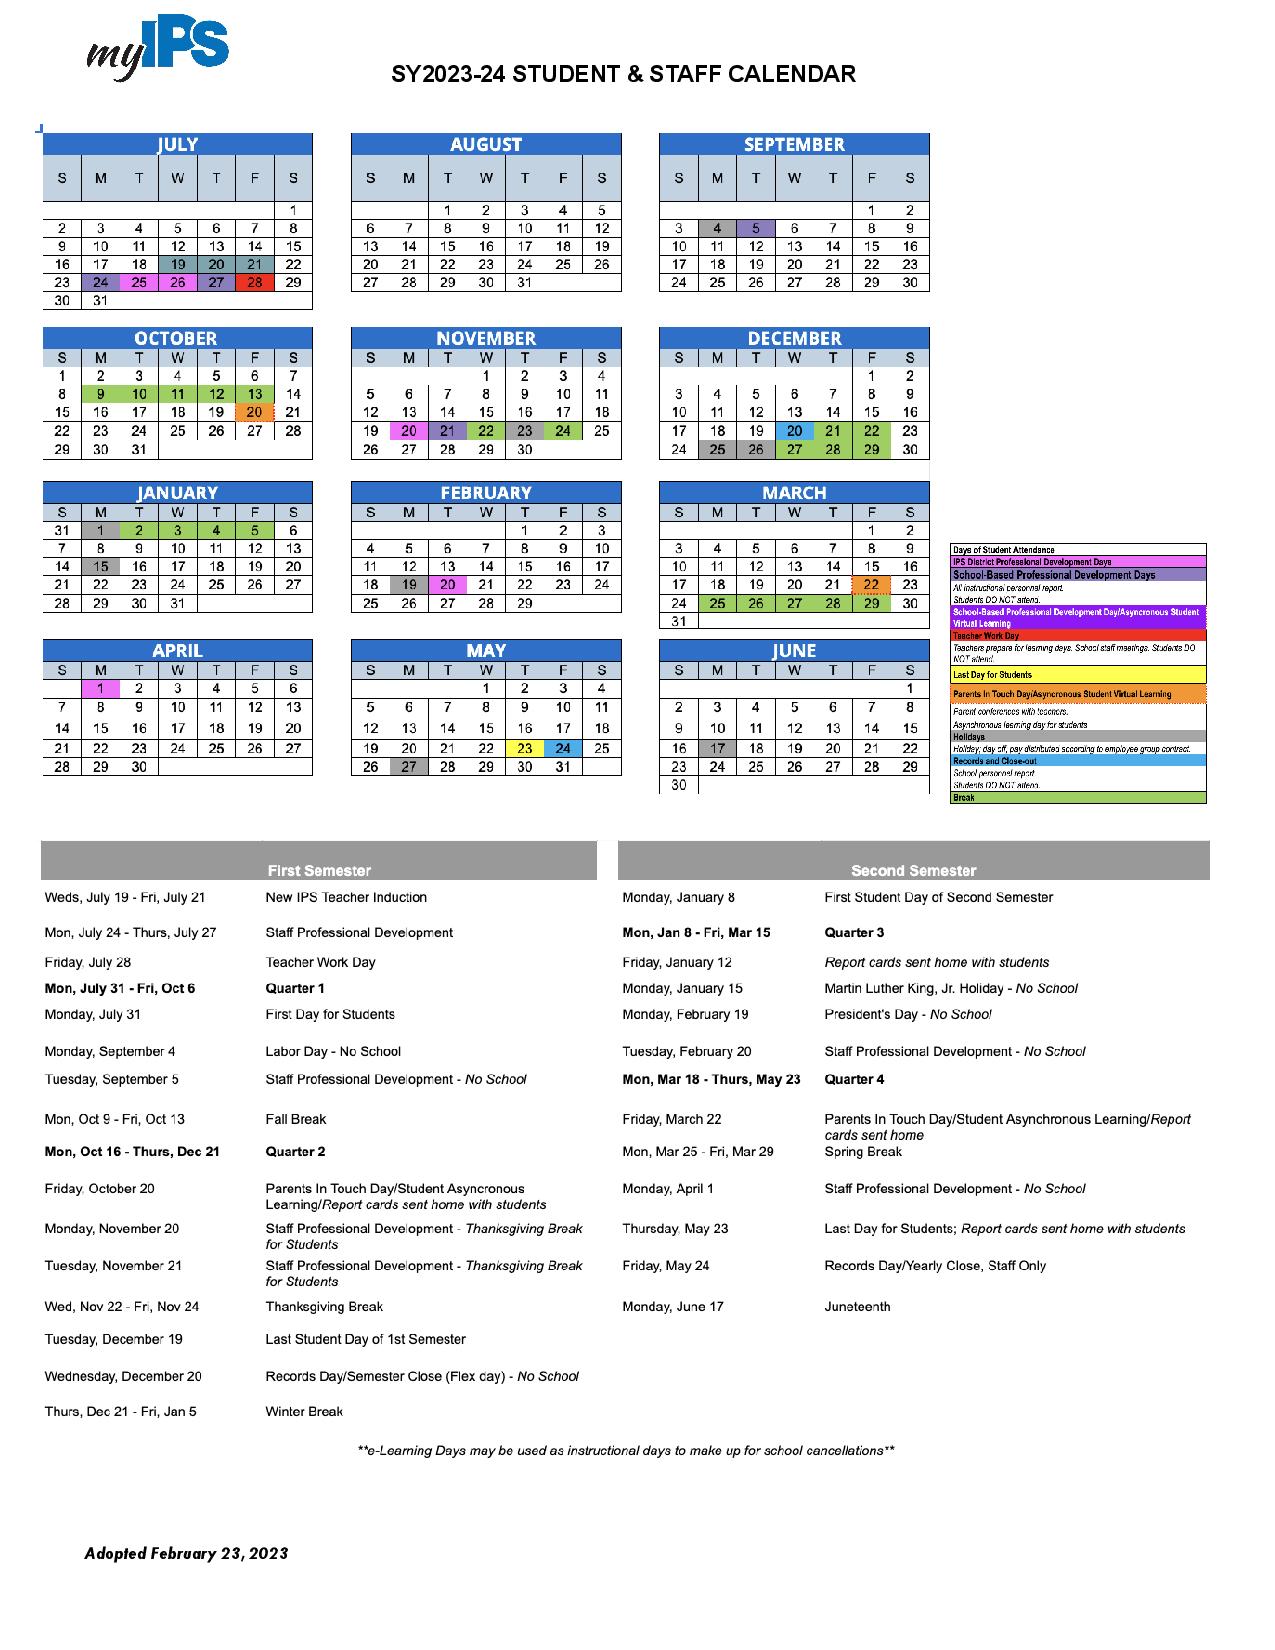 Ips School Calendar 2024 24 Printable